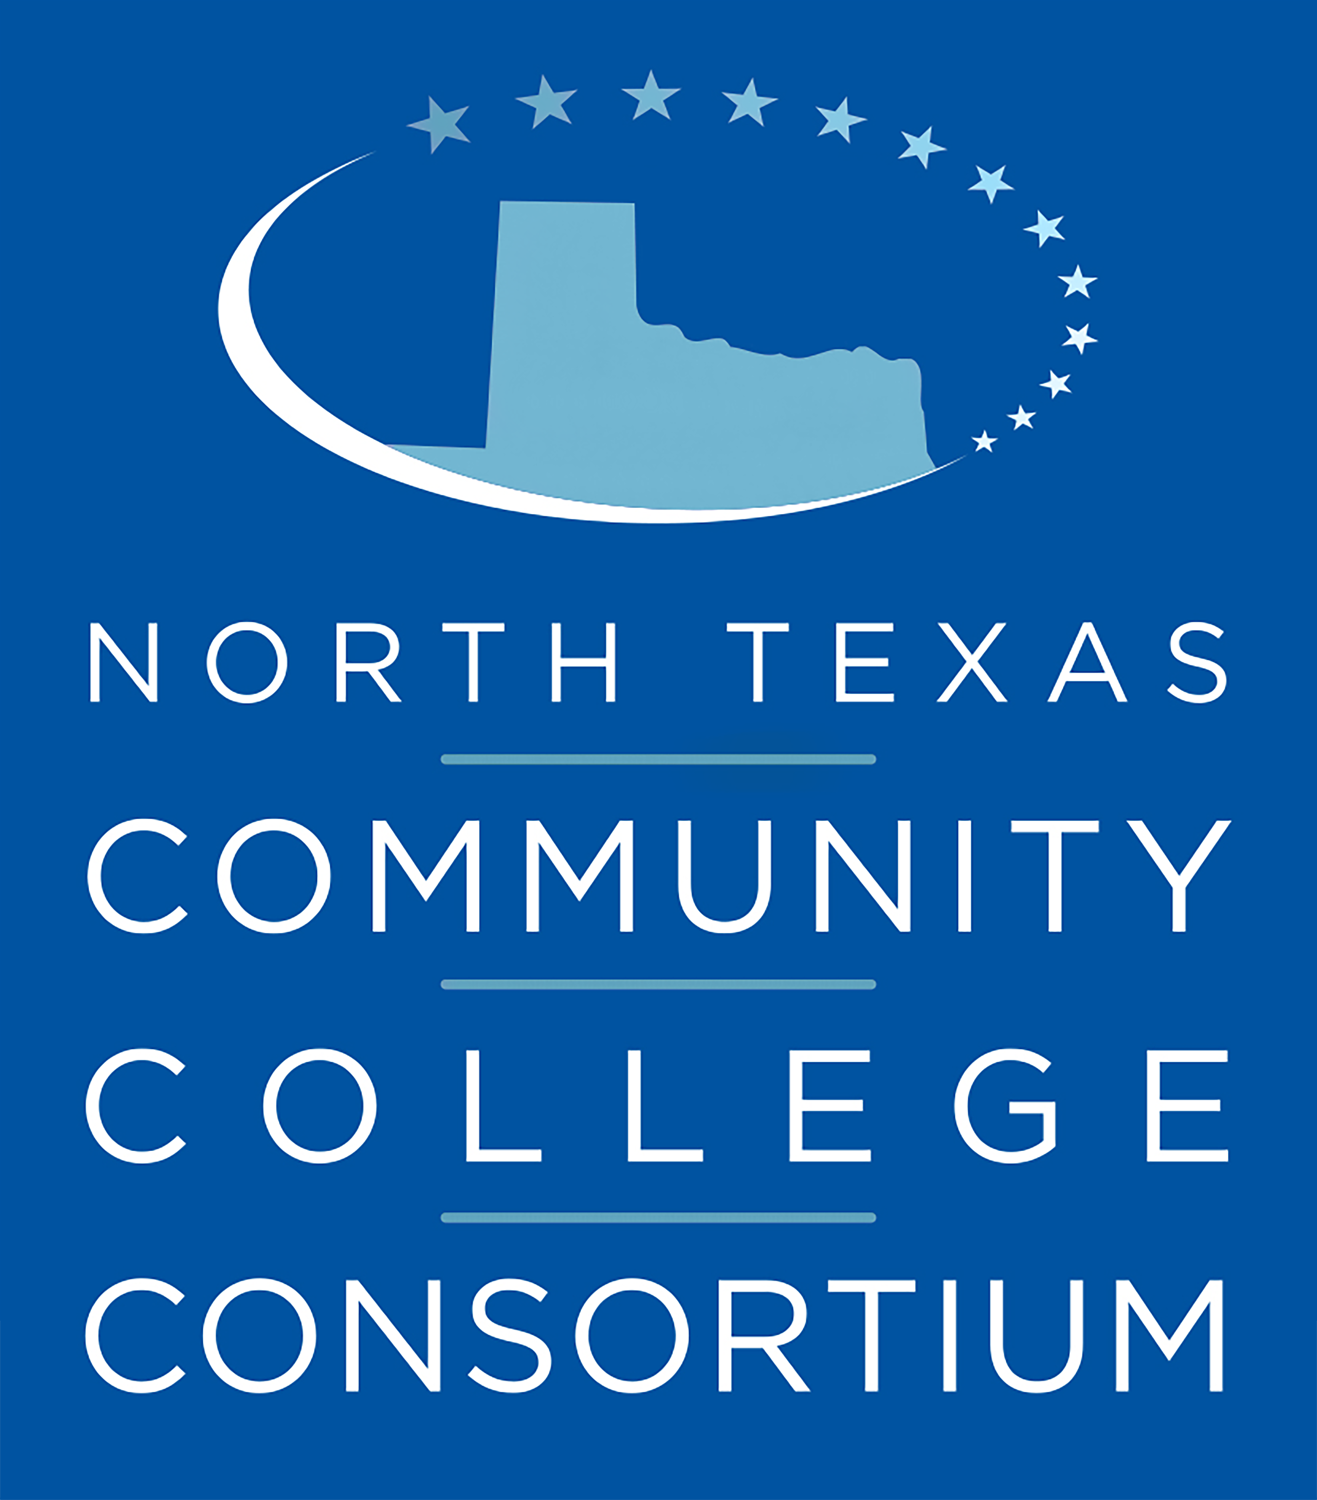 North Texas Community College Consortium